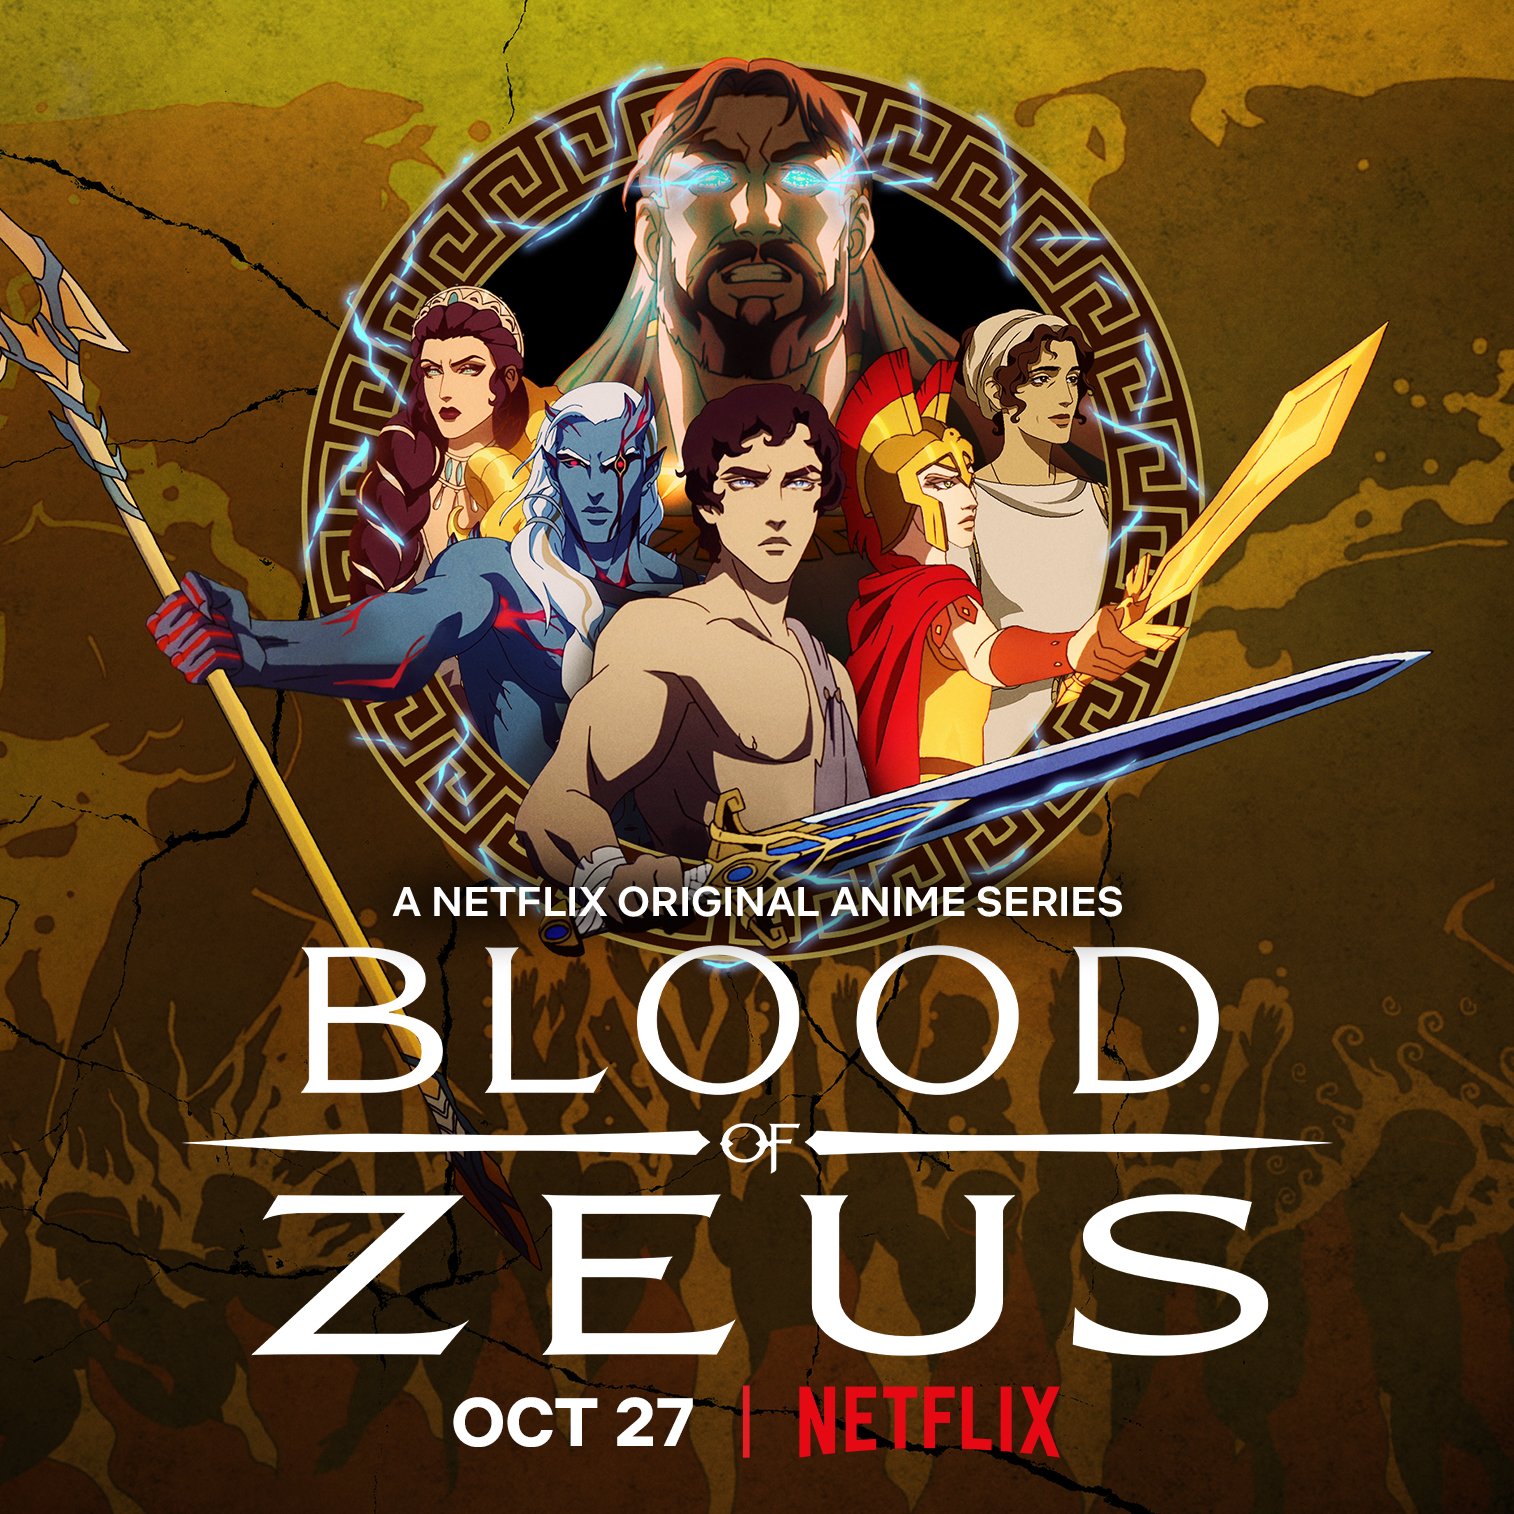 Blood Of Zeus 2020 Wallpapers